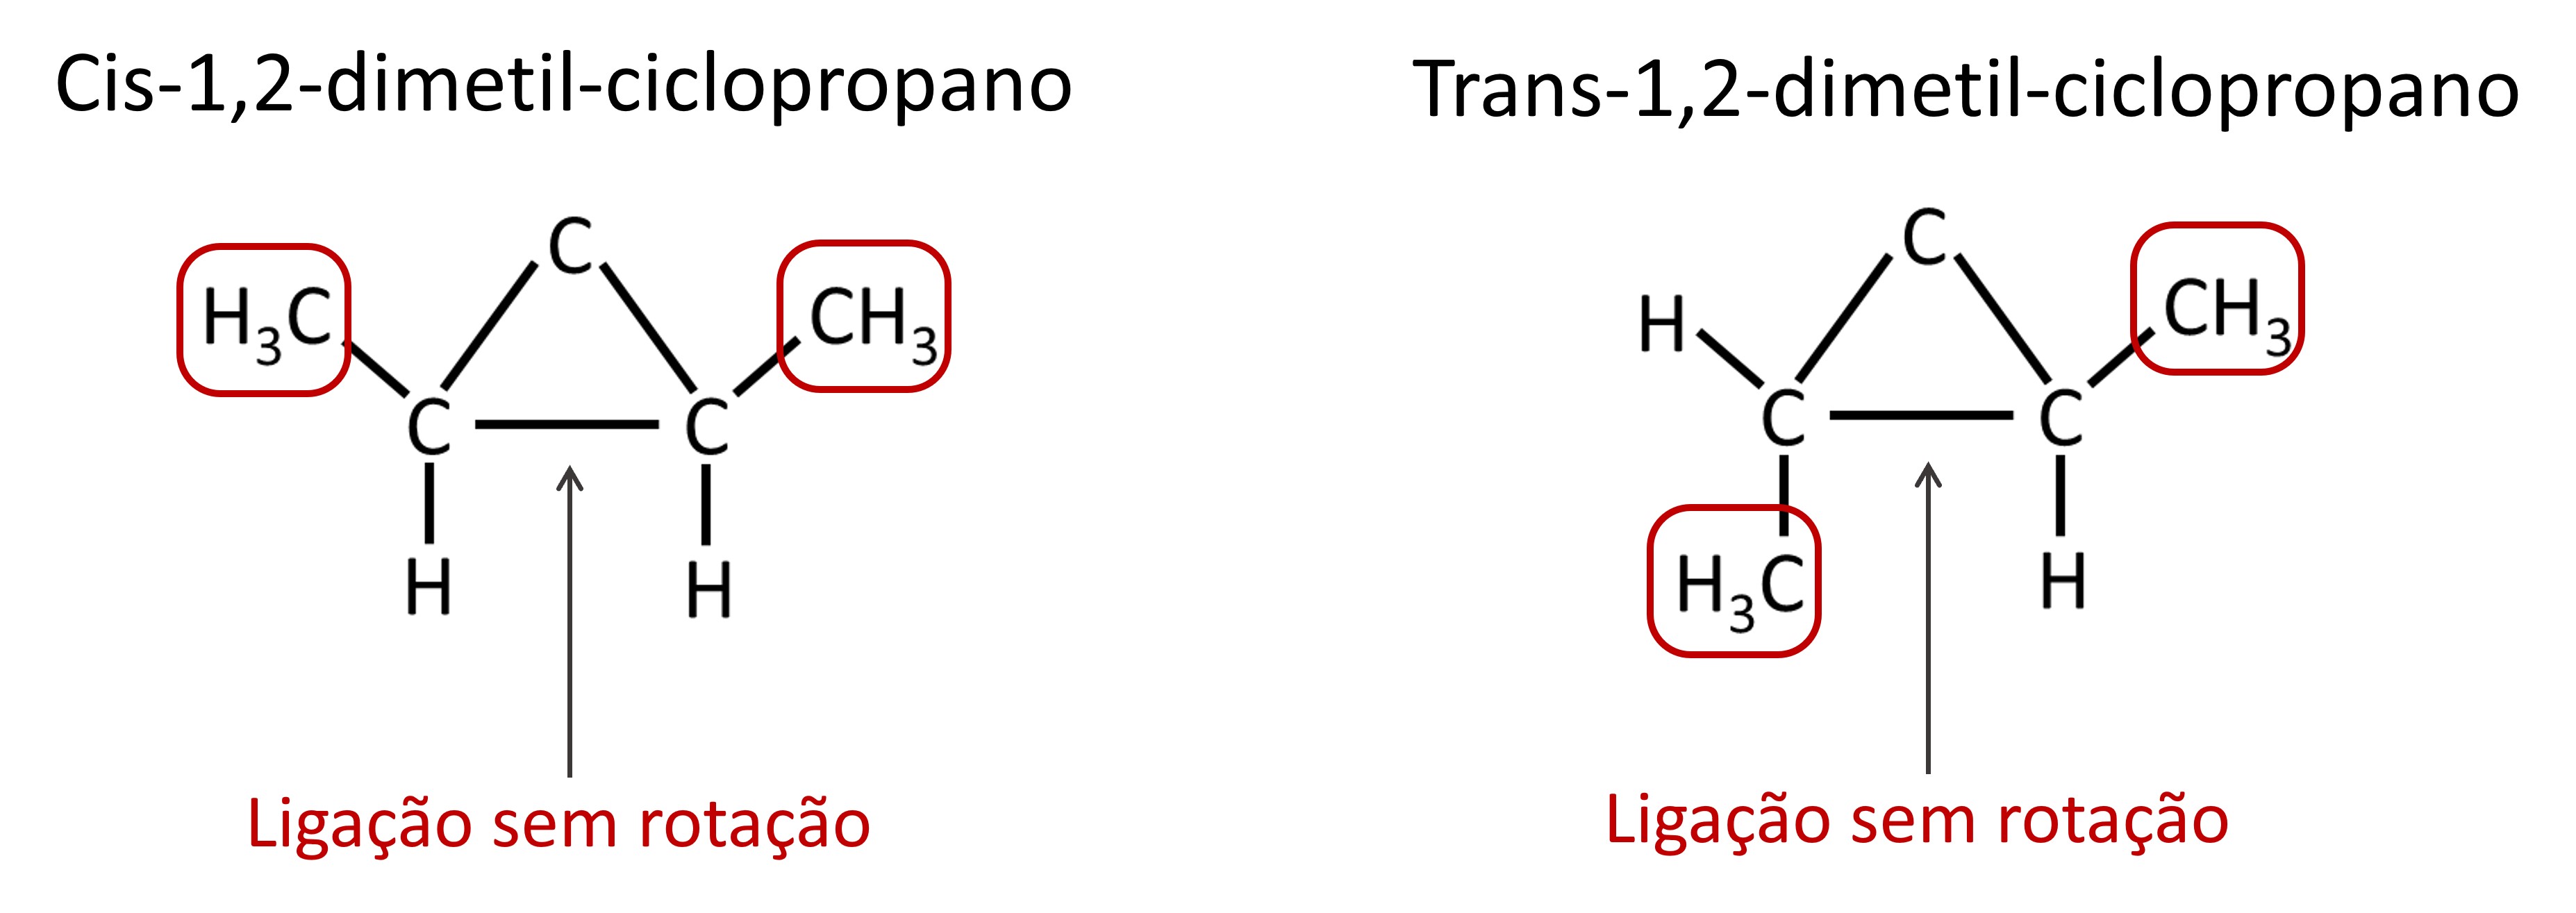 Exemplos de isomeria geomÃ©trica em compostos cÃ­clicos